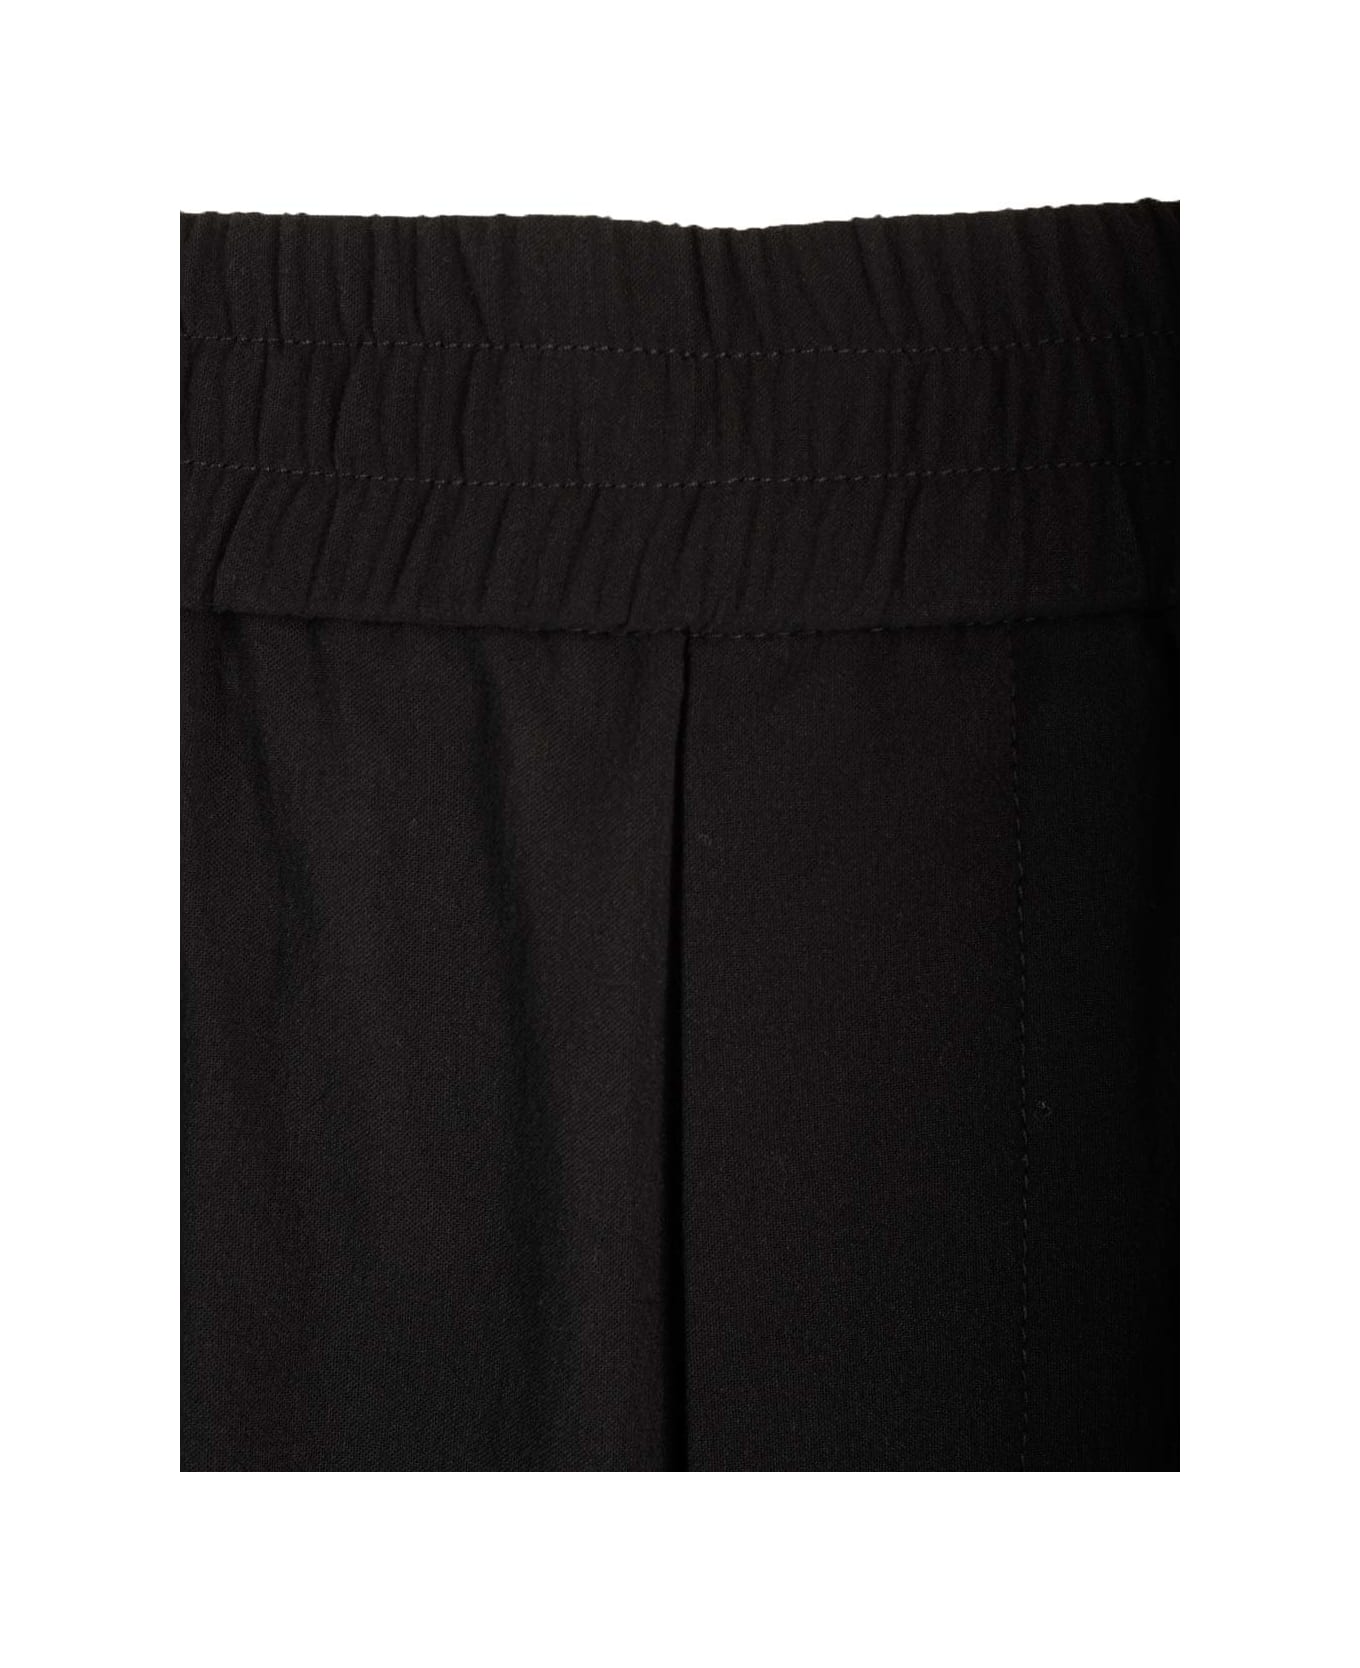 Ami Alexandre Mattiussi Cotton Crepe Trousers - BLACK ボトムス